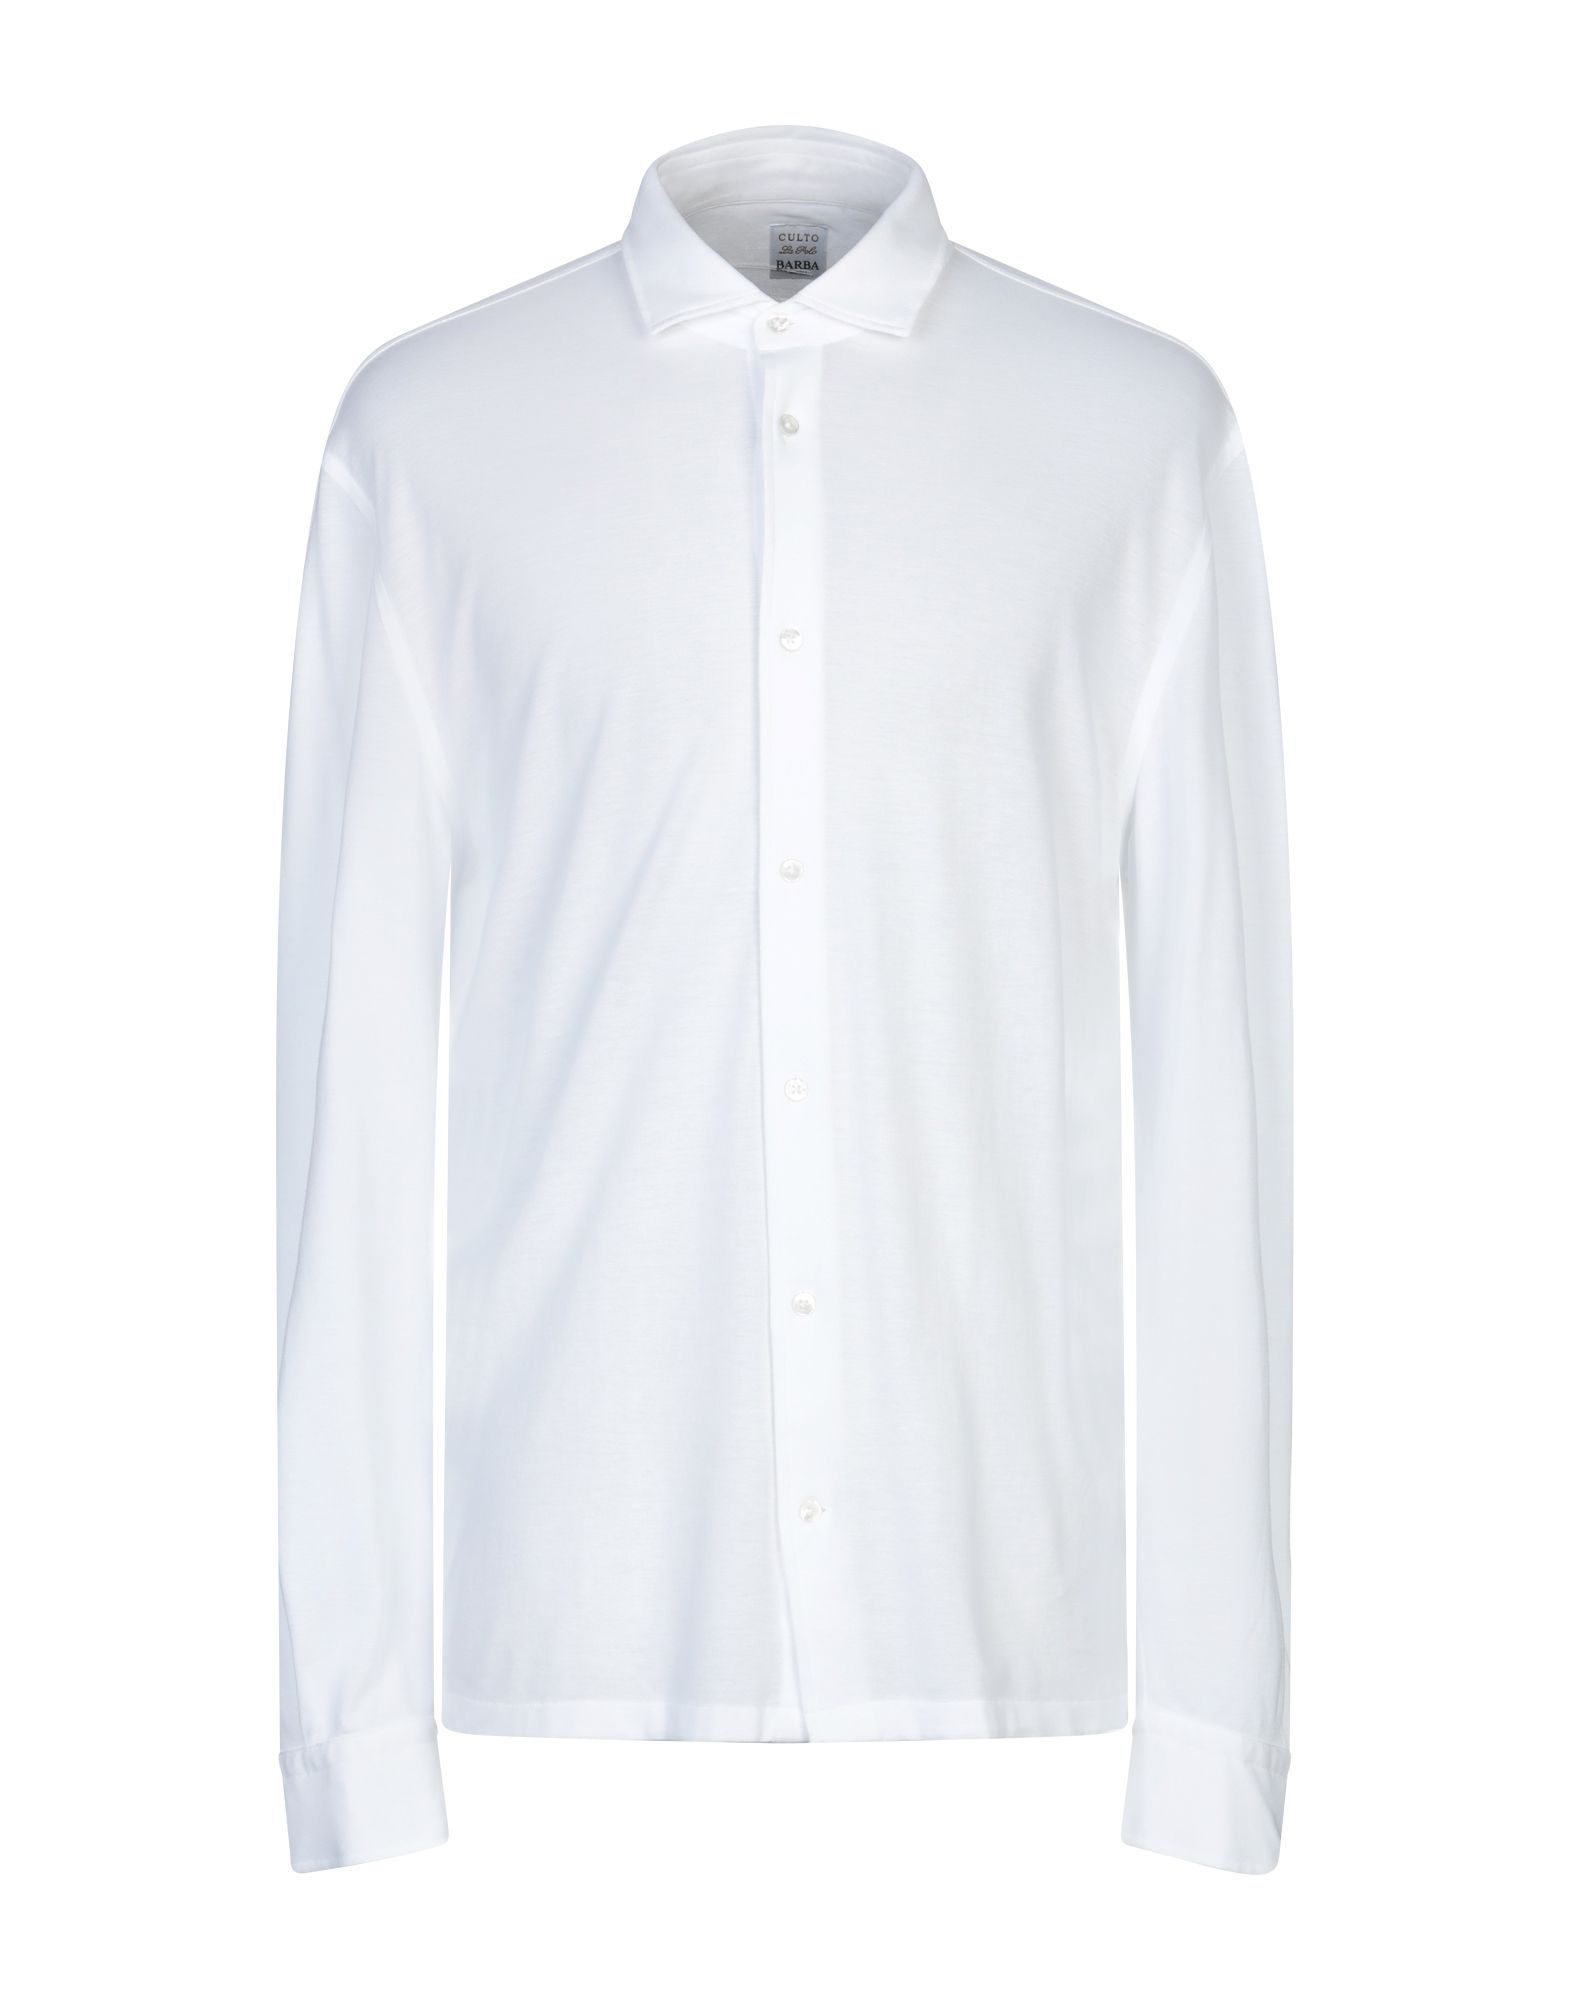 《送料無料》BARBA Napoli メンズ シャツ ホワイト 41 コットン 100%